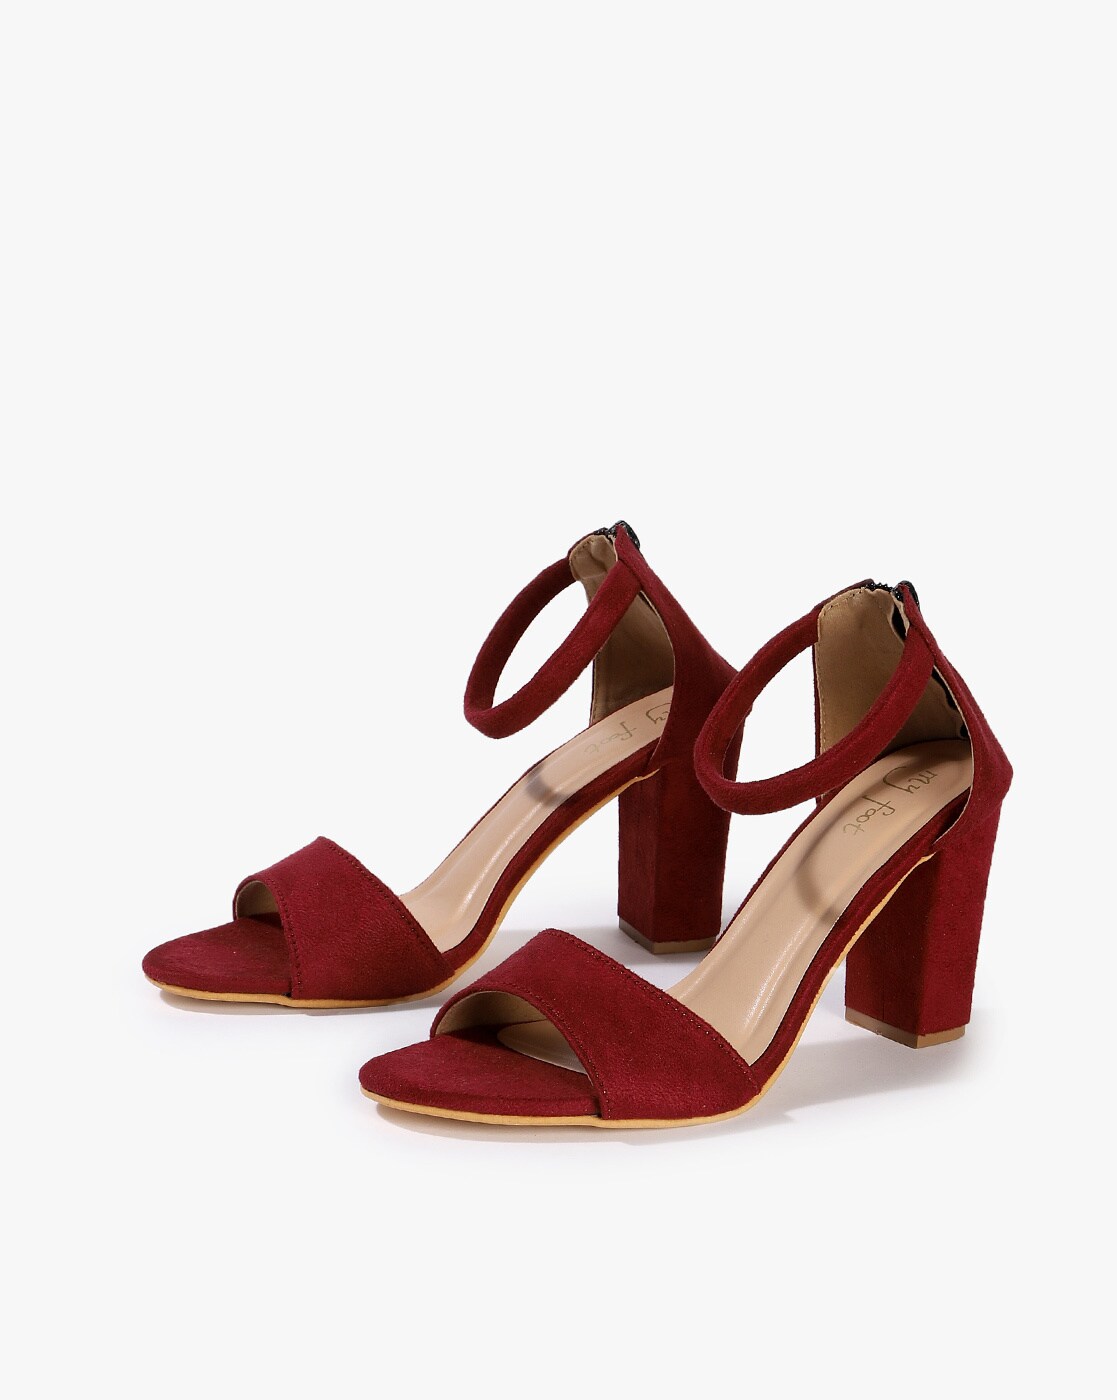 maroon chunky heels